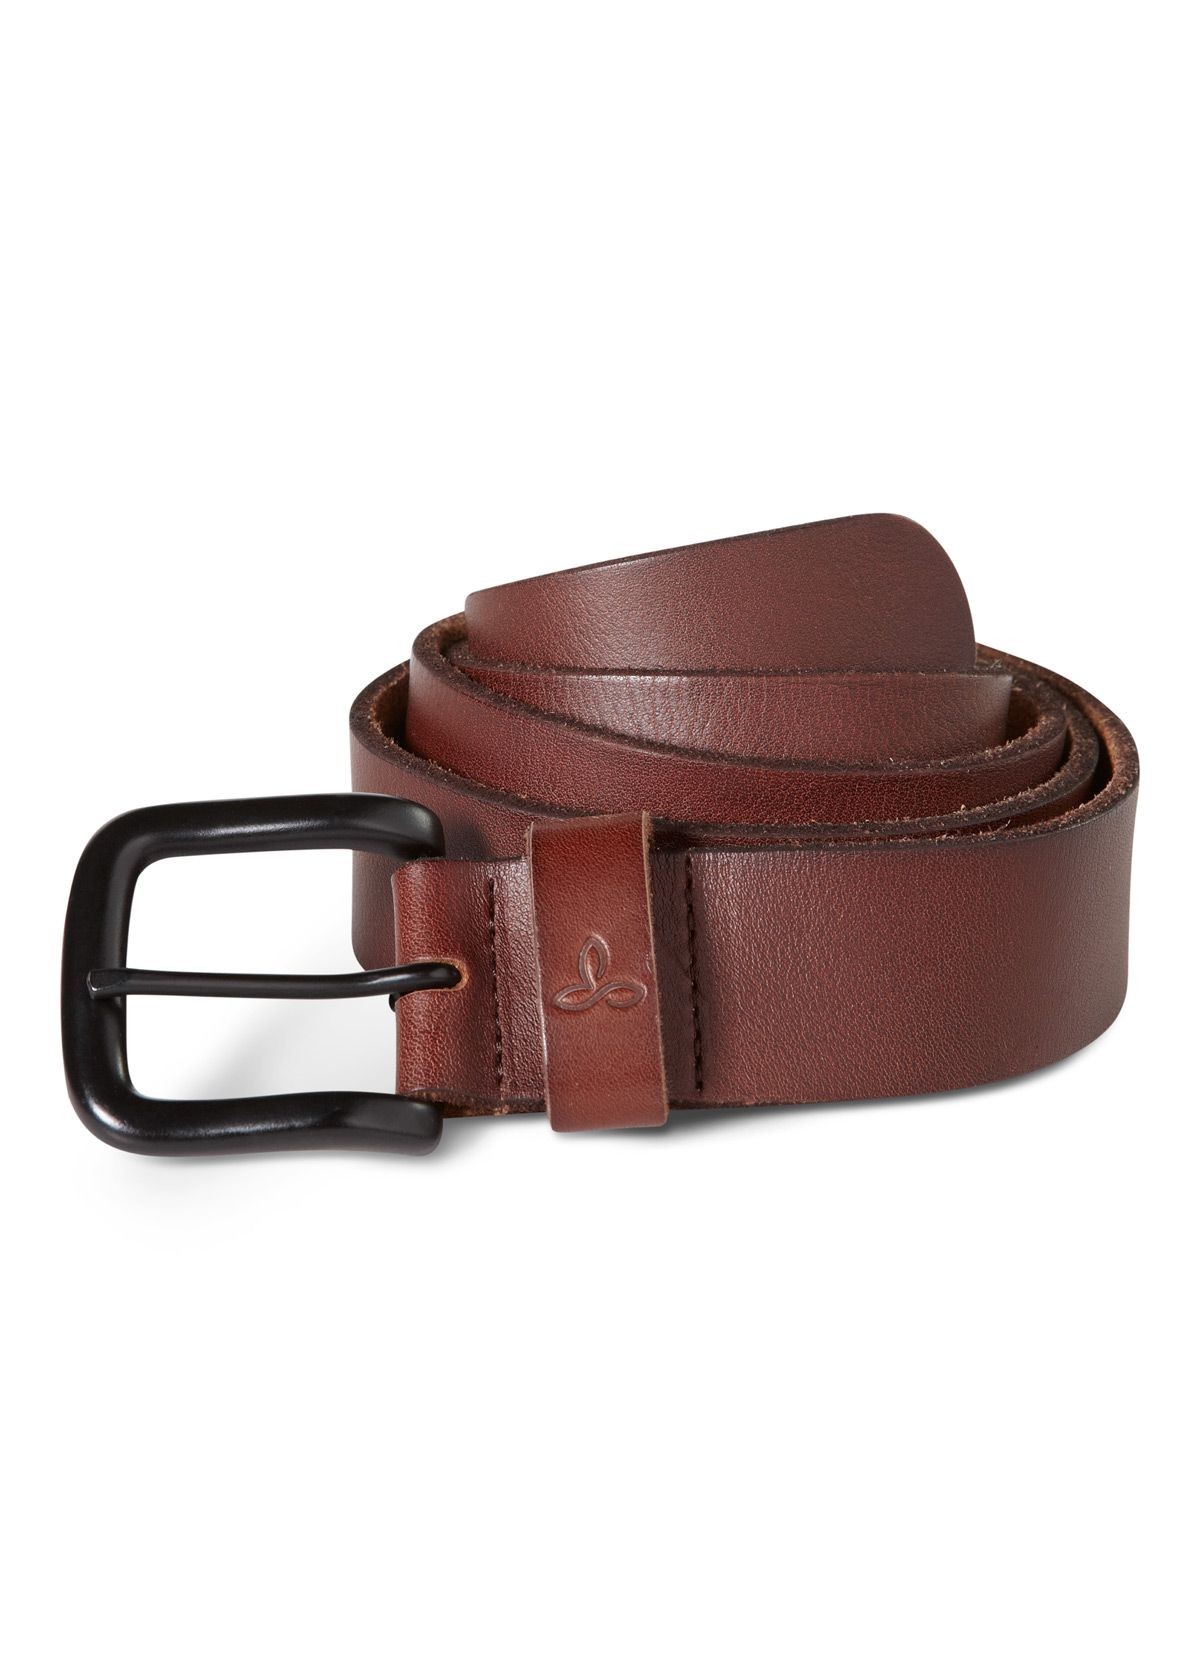 prAna Men's Belt | Matte Black Buckled Tanned Leather Belt | prAna